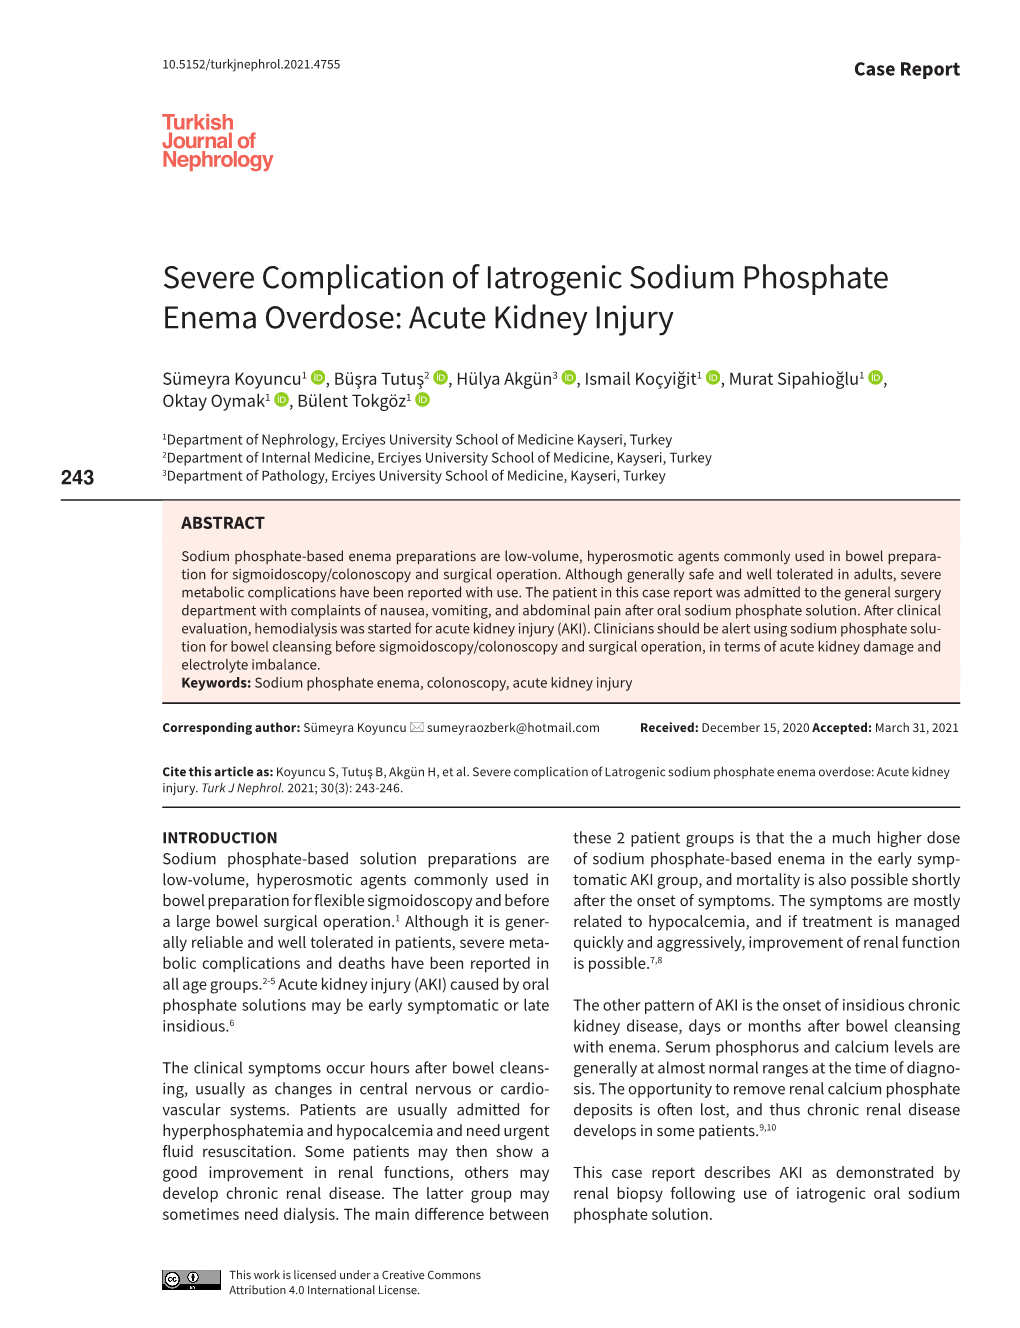 Severe Complication of Iatrogenic Sodium Phosphate Enema Overdose: Acute Kidney Injury